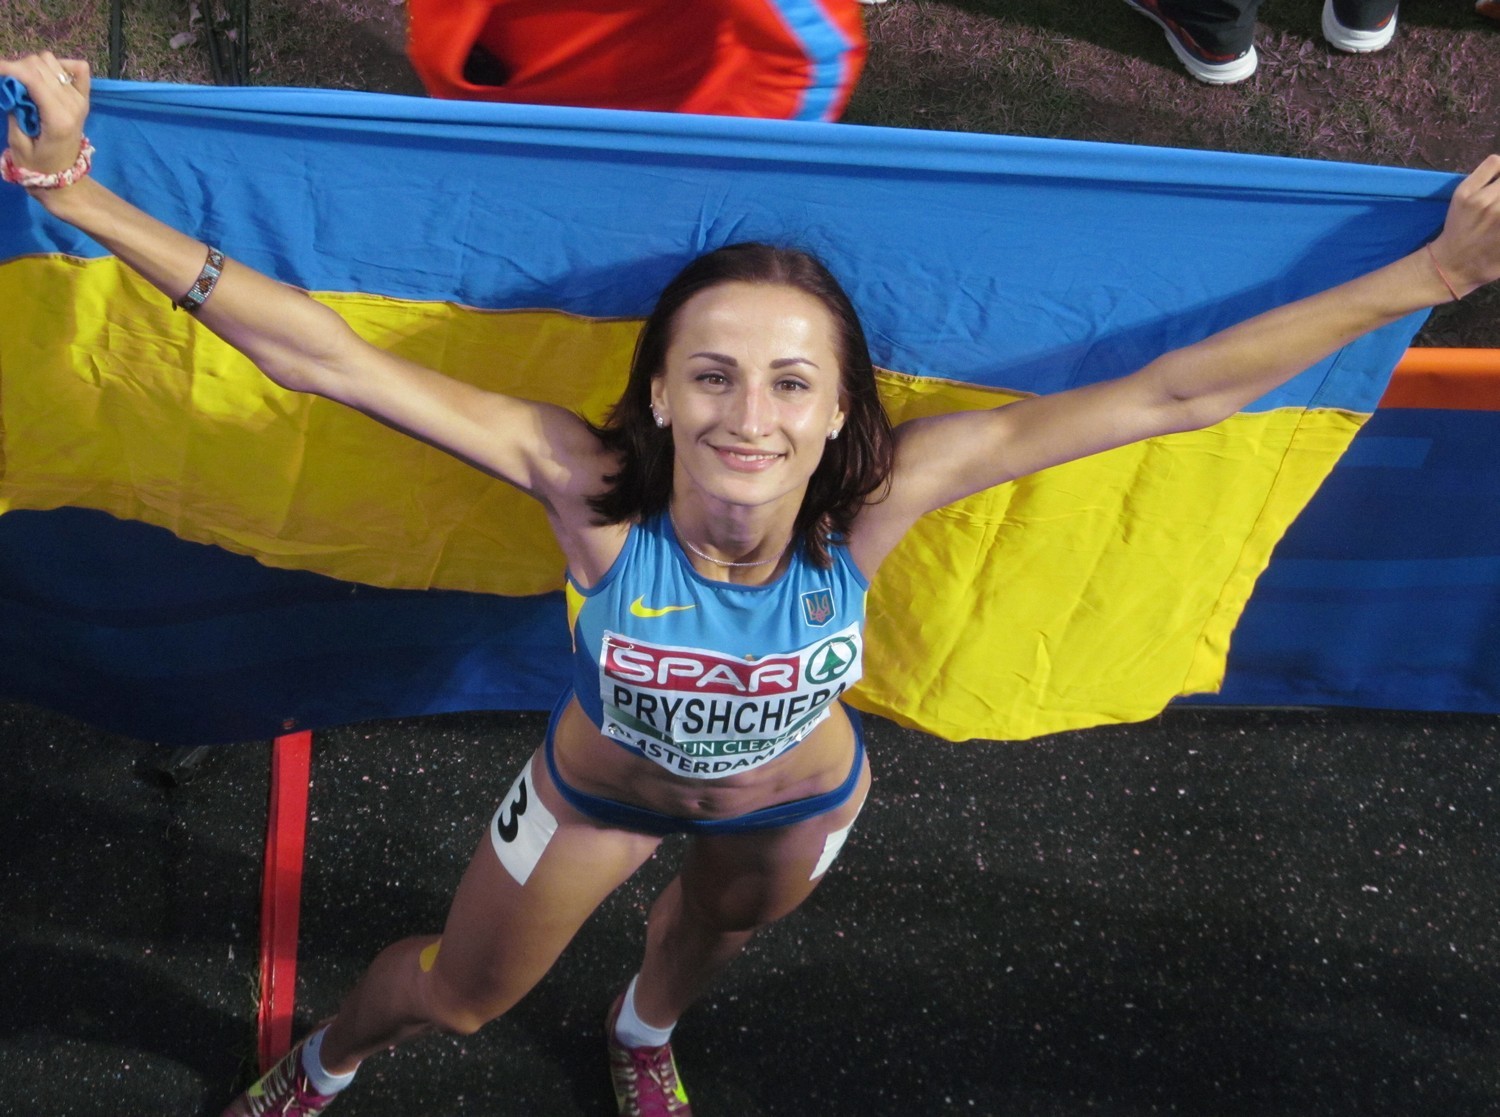 Придя к финишу, вернулась помочь сопернице - благородный поступок украинской бегуньи Прищепы на ЧЕ поразил мир